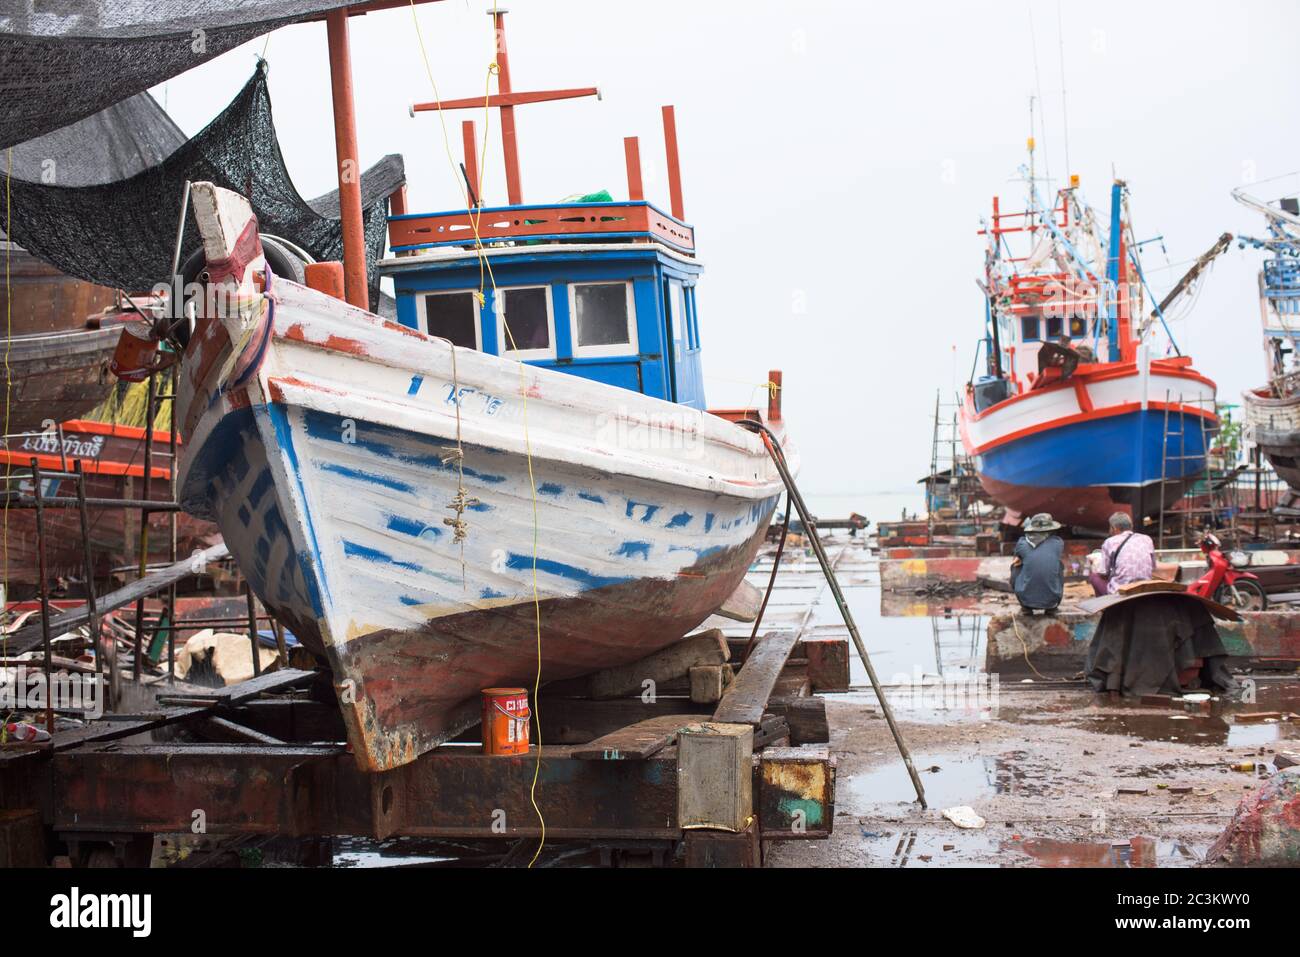 Naklua, Pattaya, Thaïlande - 26 juin 2015 : la Thaïlande est célèbre pour sa nourriture, et une vaste flotte de bateaux de pêche prend en mer chaque jour pour attraper fr Banque D'Images